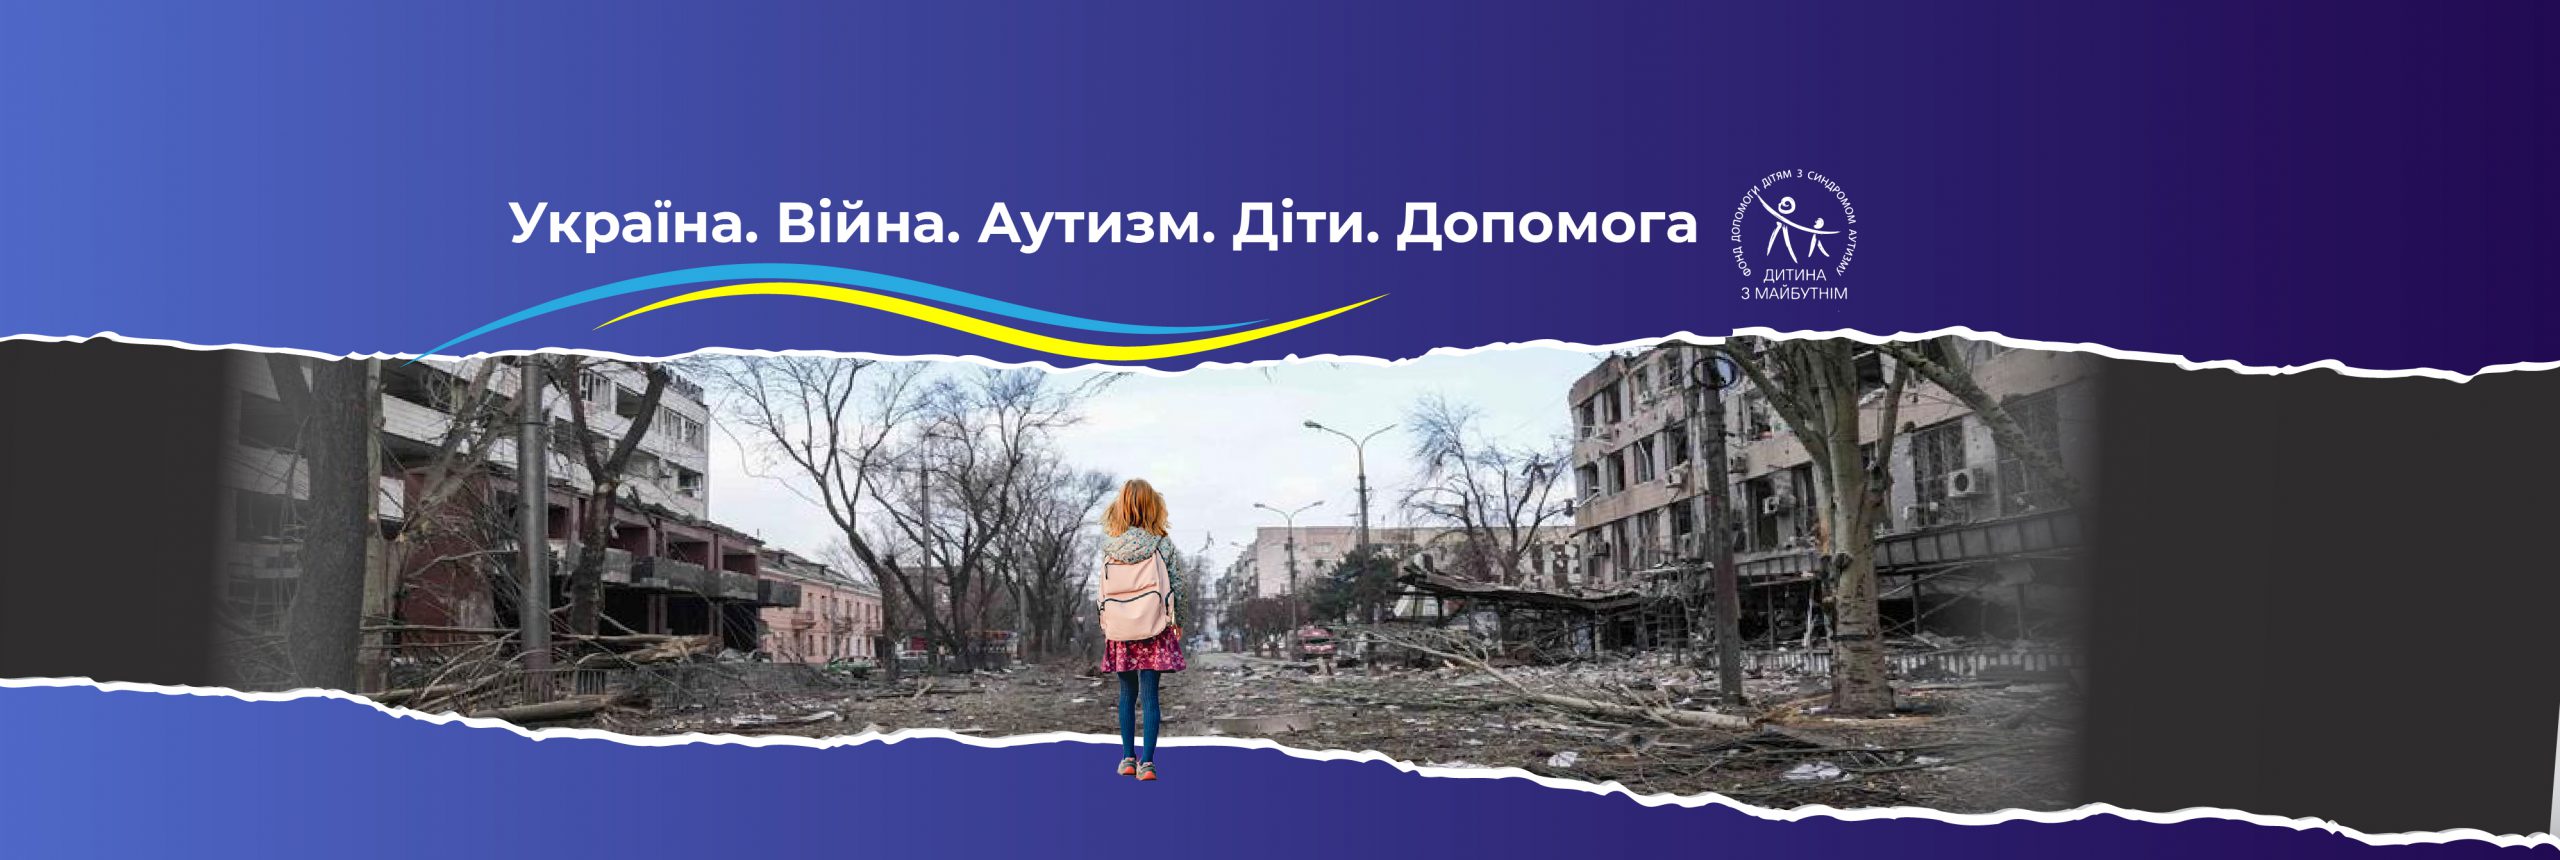 Объявляем сбор средств по всему миру для помощи детям Украины